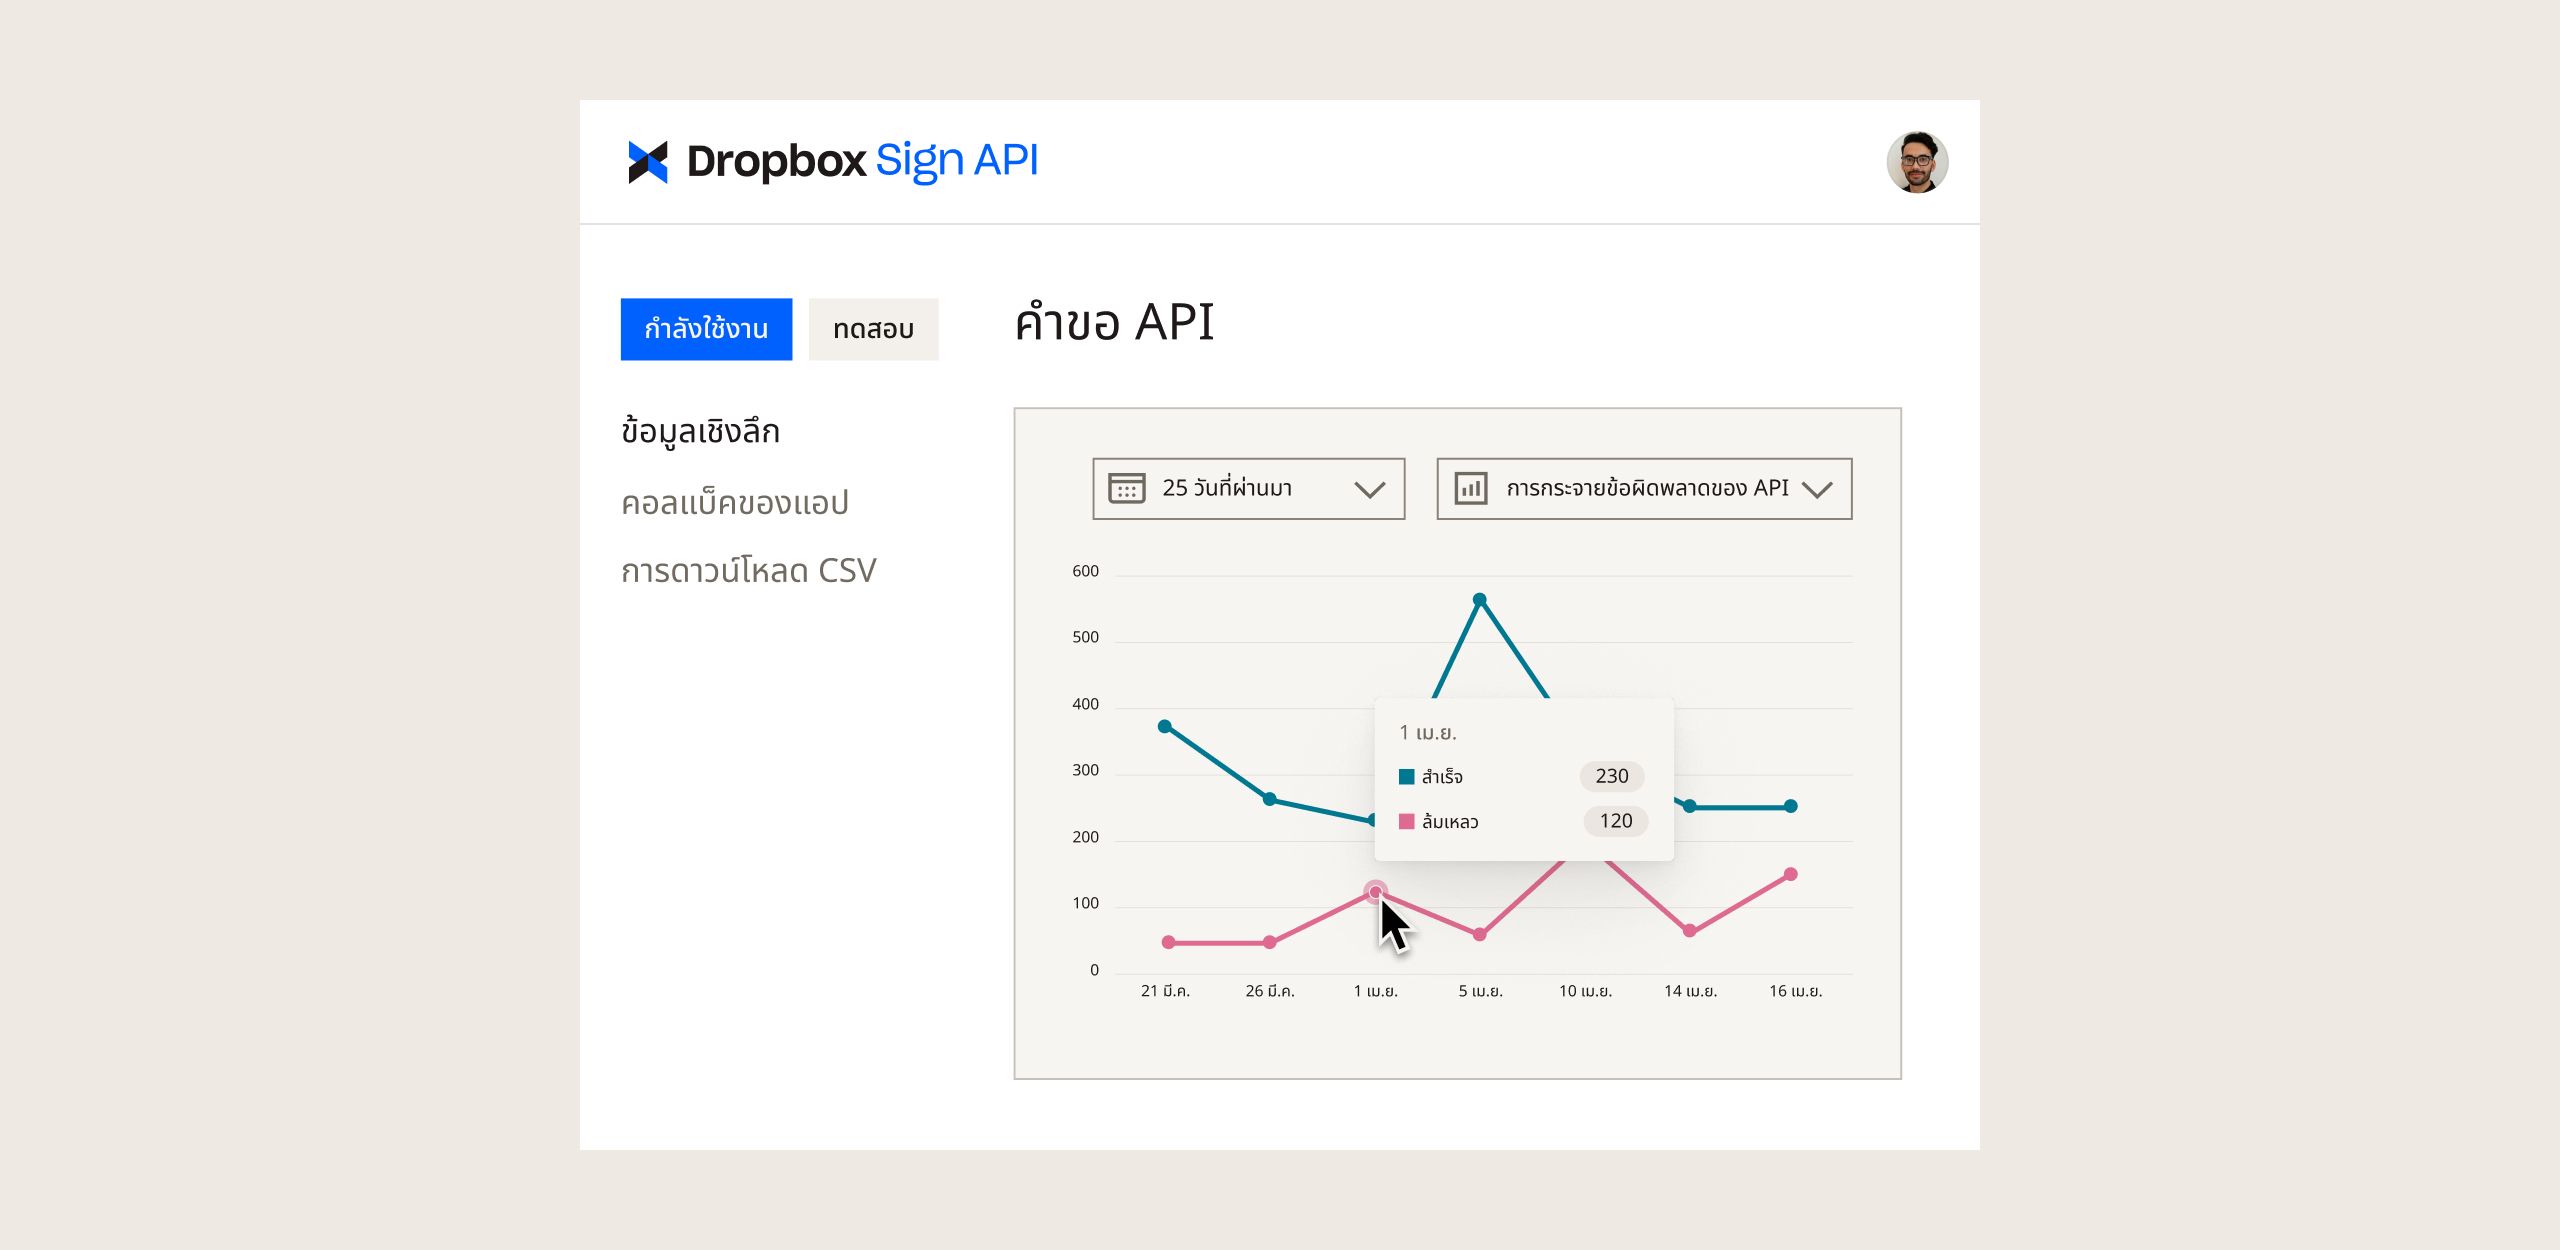 แดชบอร์ด Dropbox Sign API พร้อมกราฟที่แสดงคำขอ API ตามเวลา